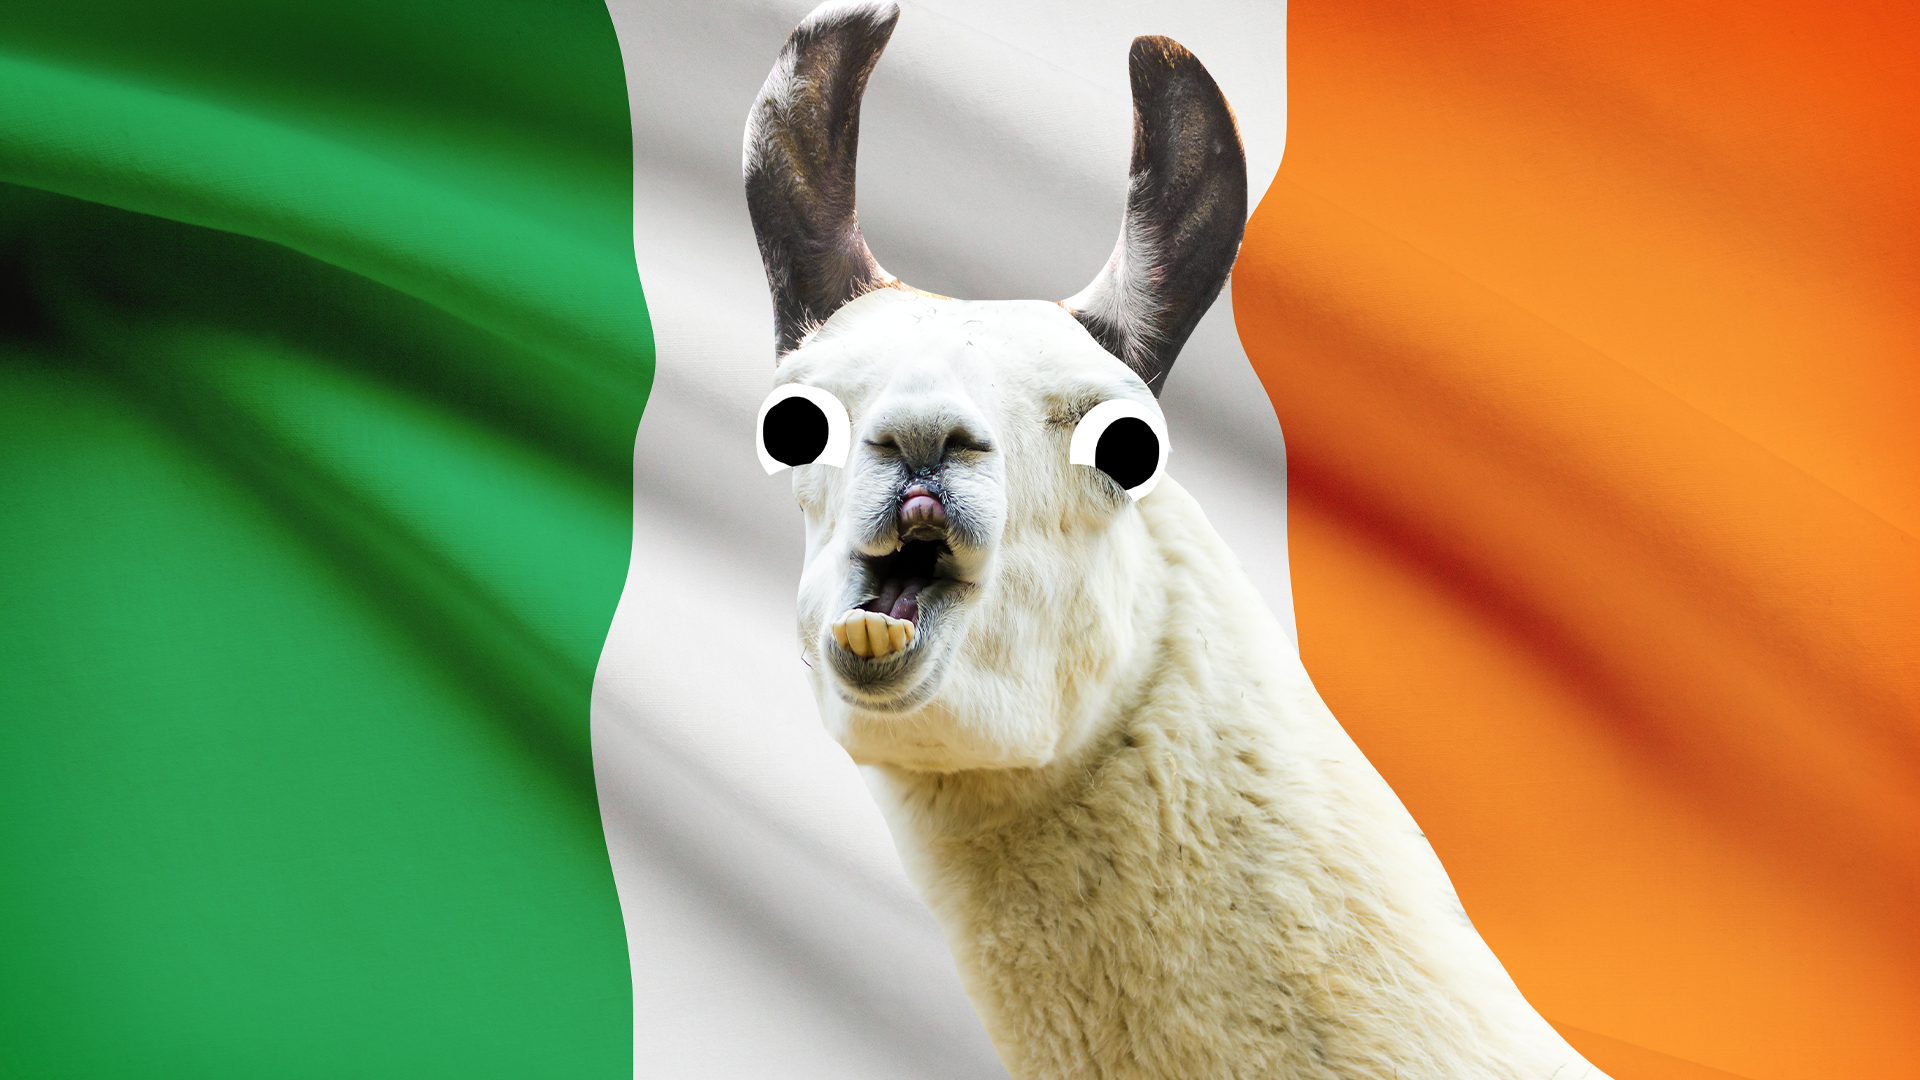 Derpy llama on Irish flag background 